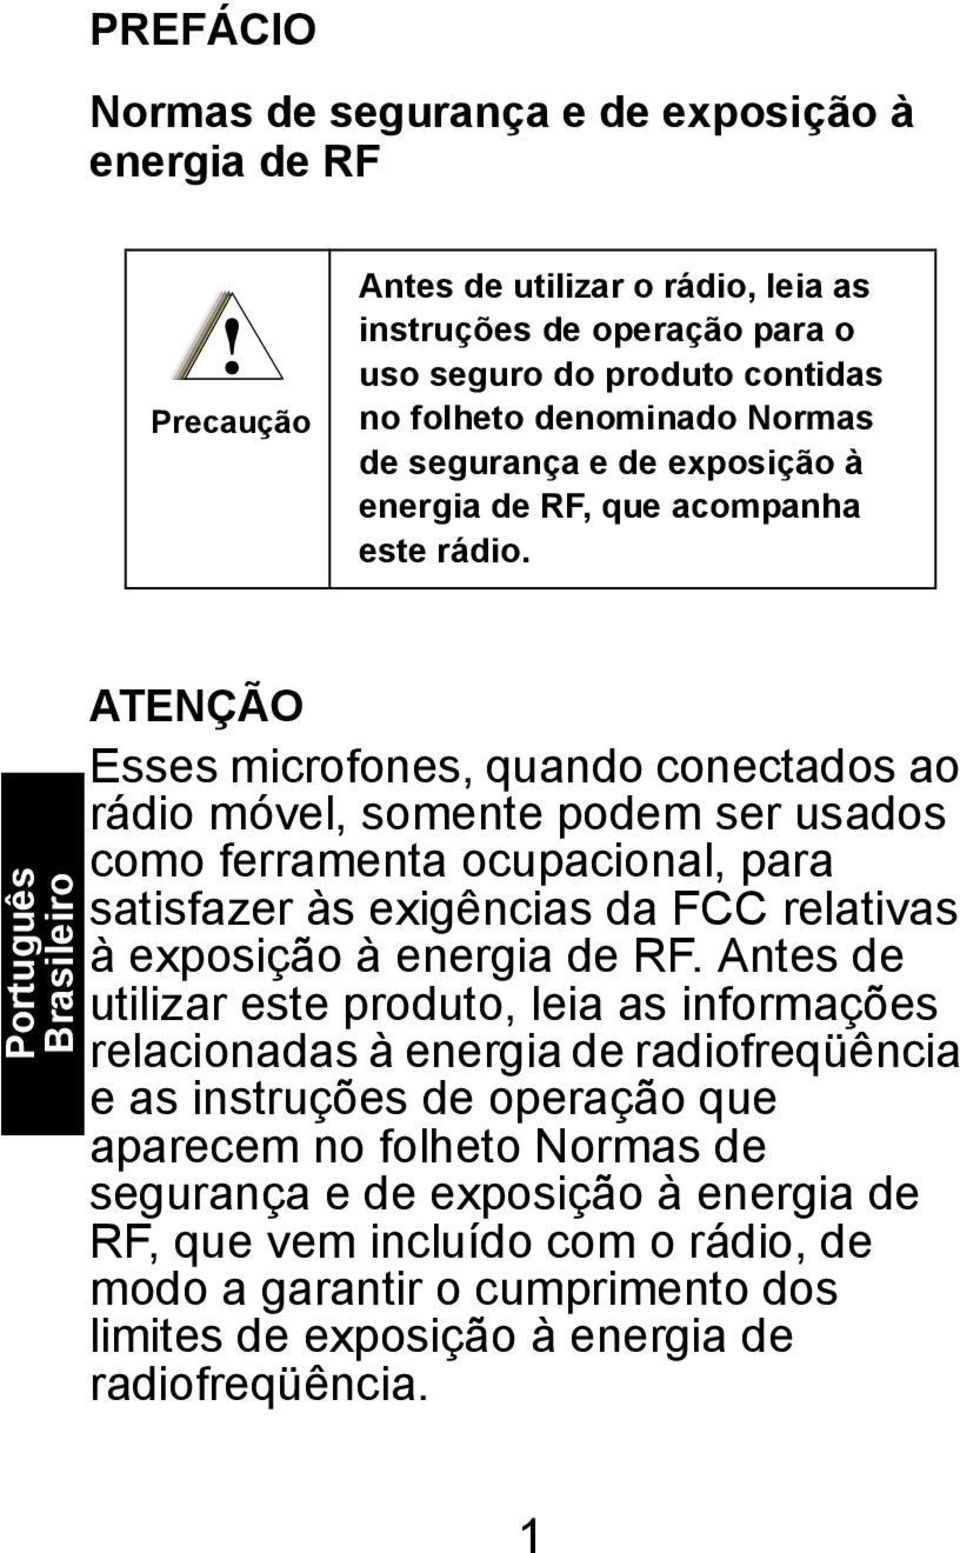 Português Brasileiro ATENÇÃO Esses microfones, quando conectados ao rádio móvel, somente podem ser usados como ferramenta ocupacional, para satisfazer às exigências da FCC relativas à exposição à